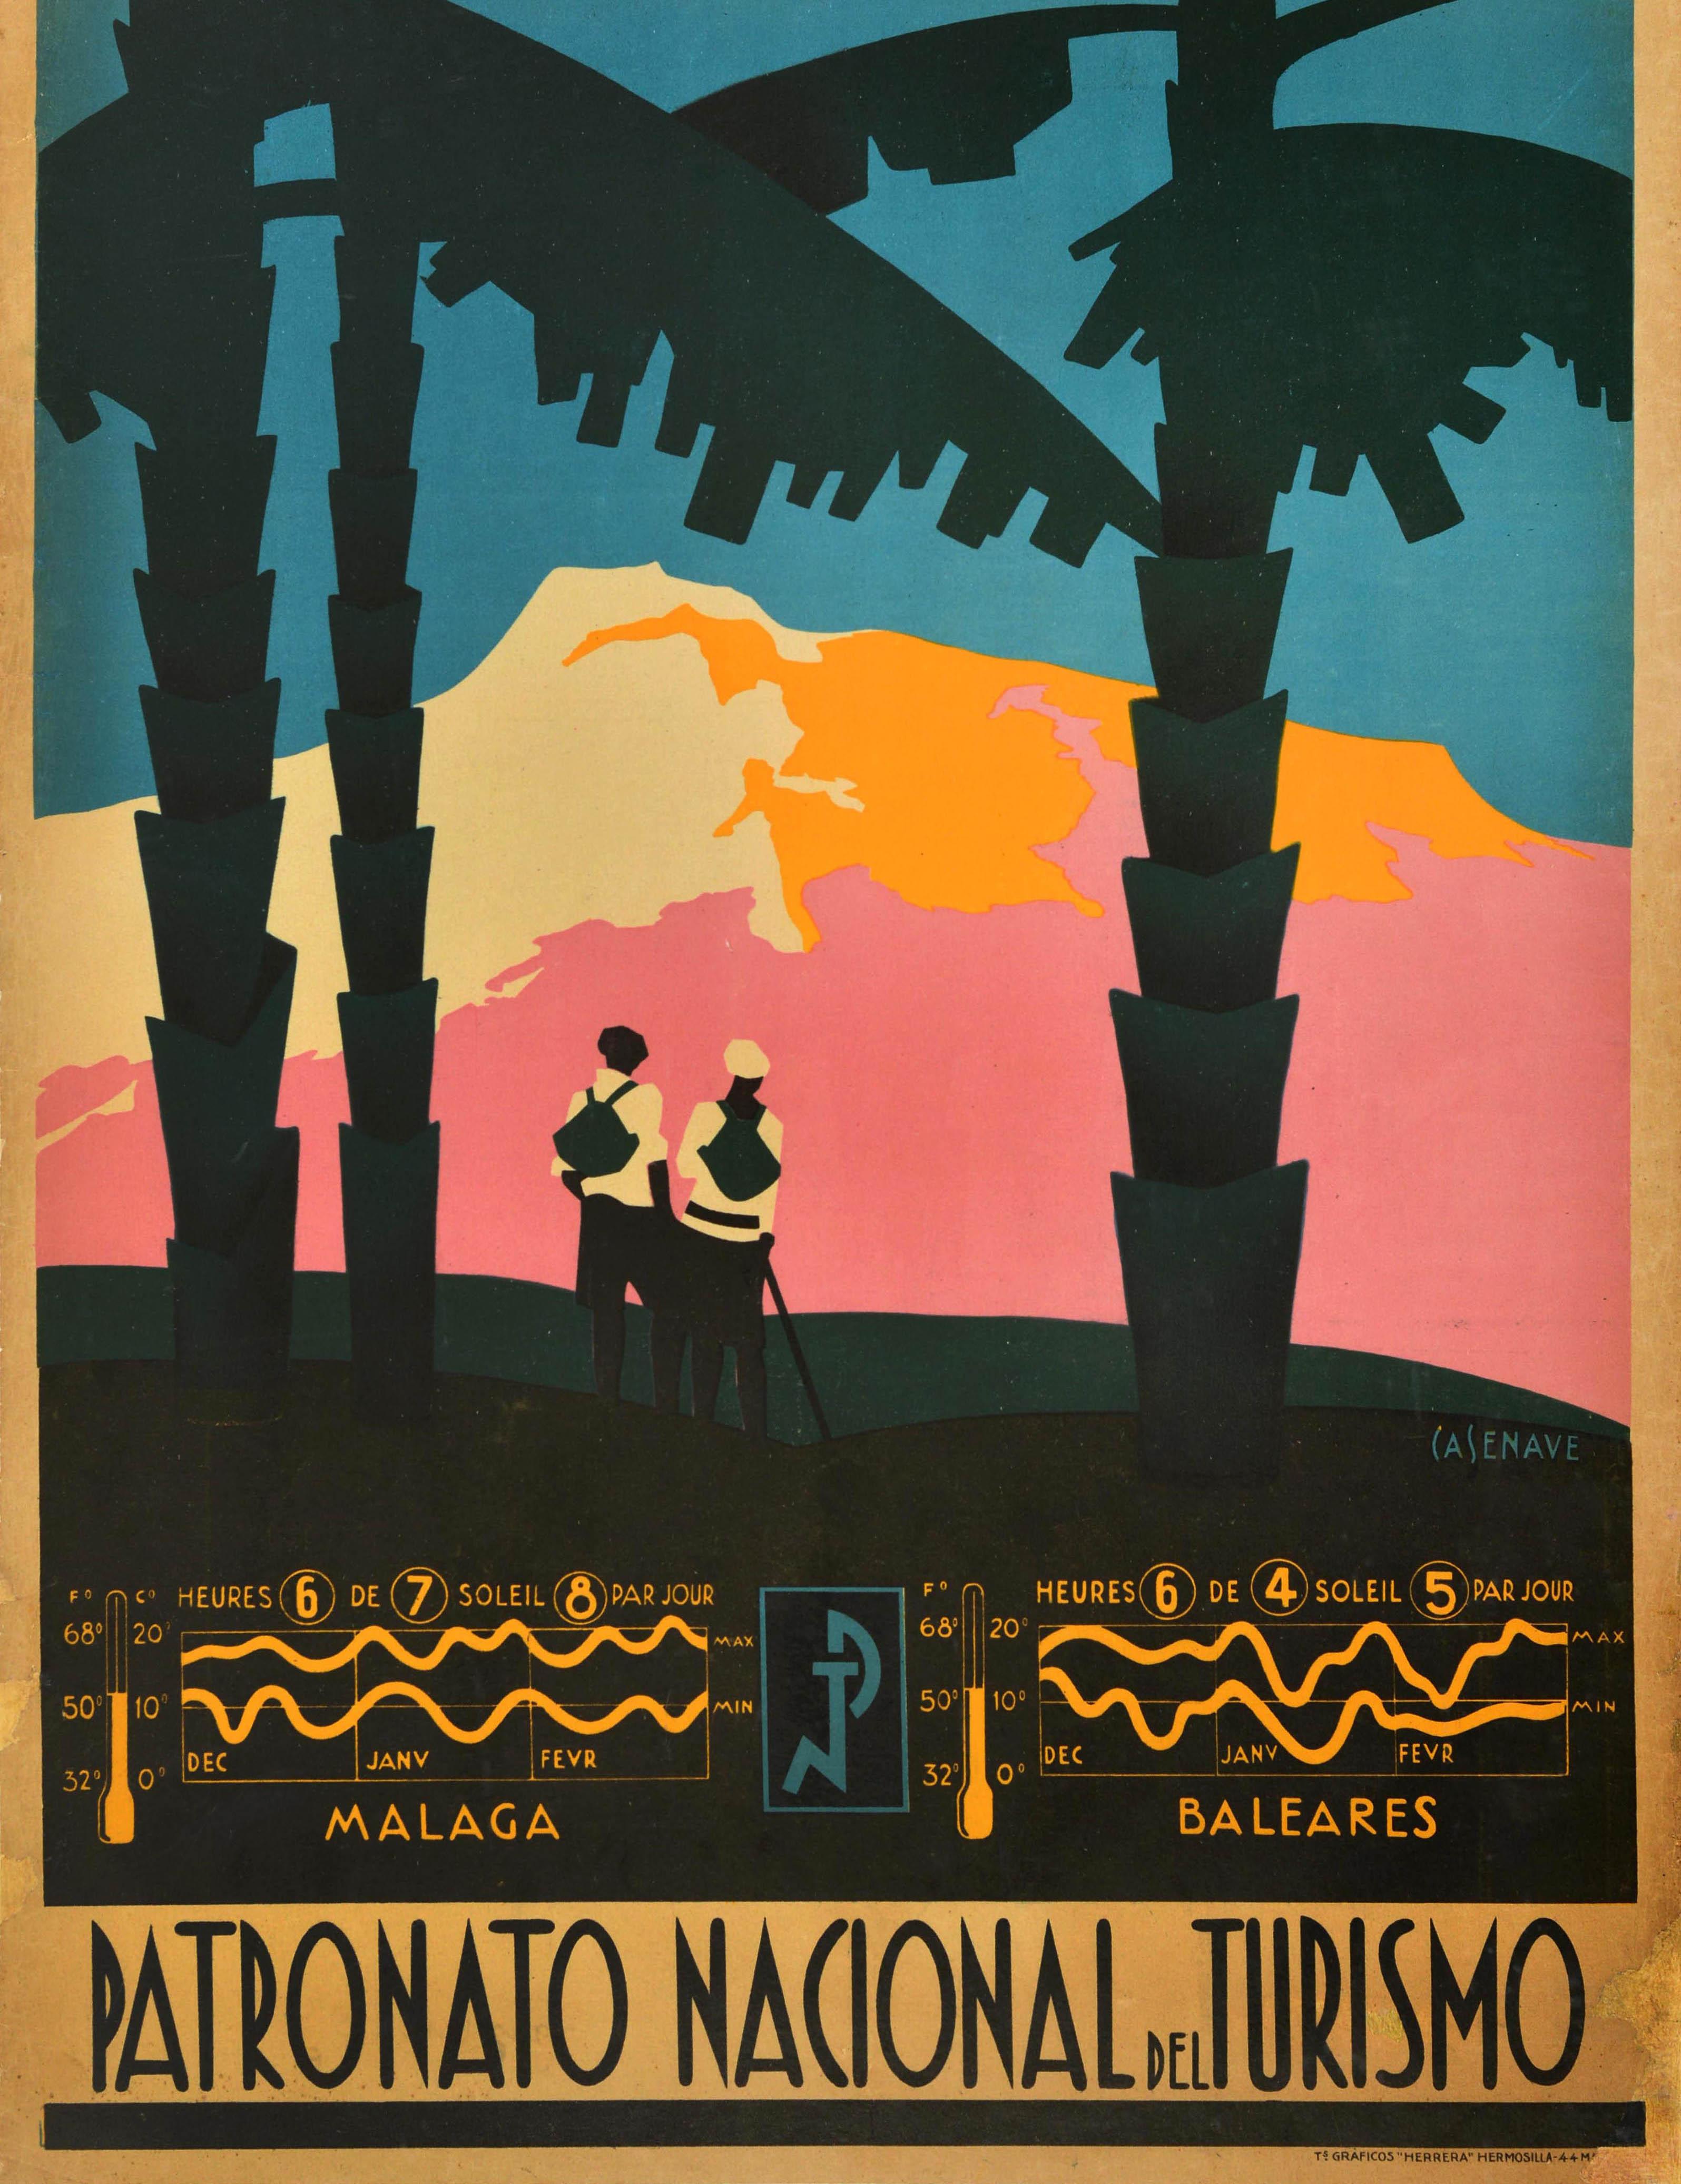 Originales antikes Reiseplakat - L'hiver en Espagne / Winter in Spanien - mit einem atemberaubenden Art-Deco-Design, das zwei Personen mit Rucksäcken zeigt, von denen eine einen Wanderstock in der Hand hält. Sie stehen auf einem Hügel unter Palmen